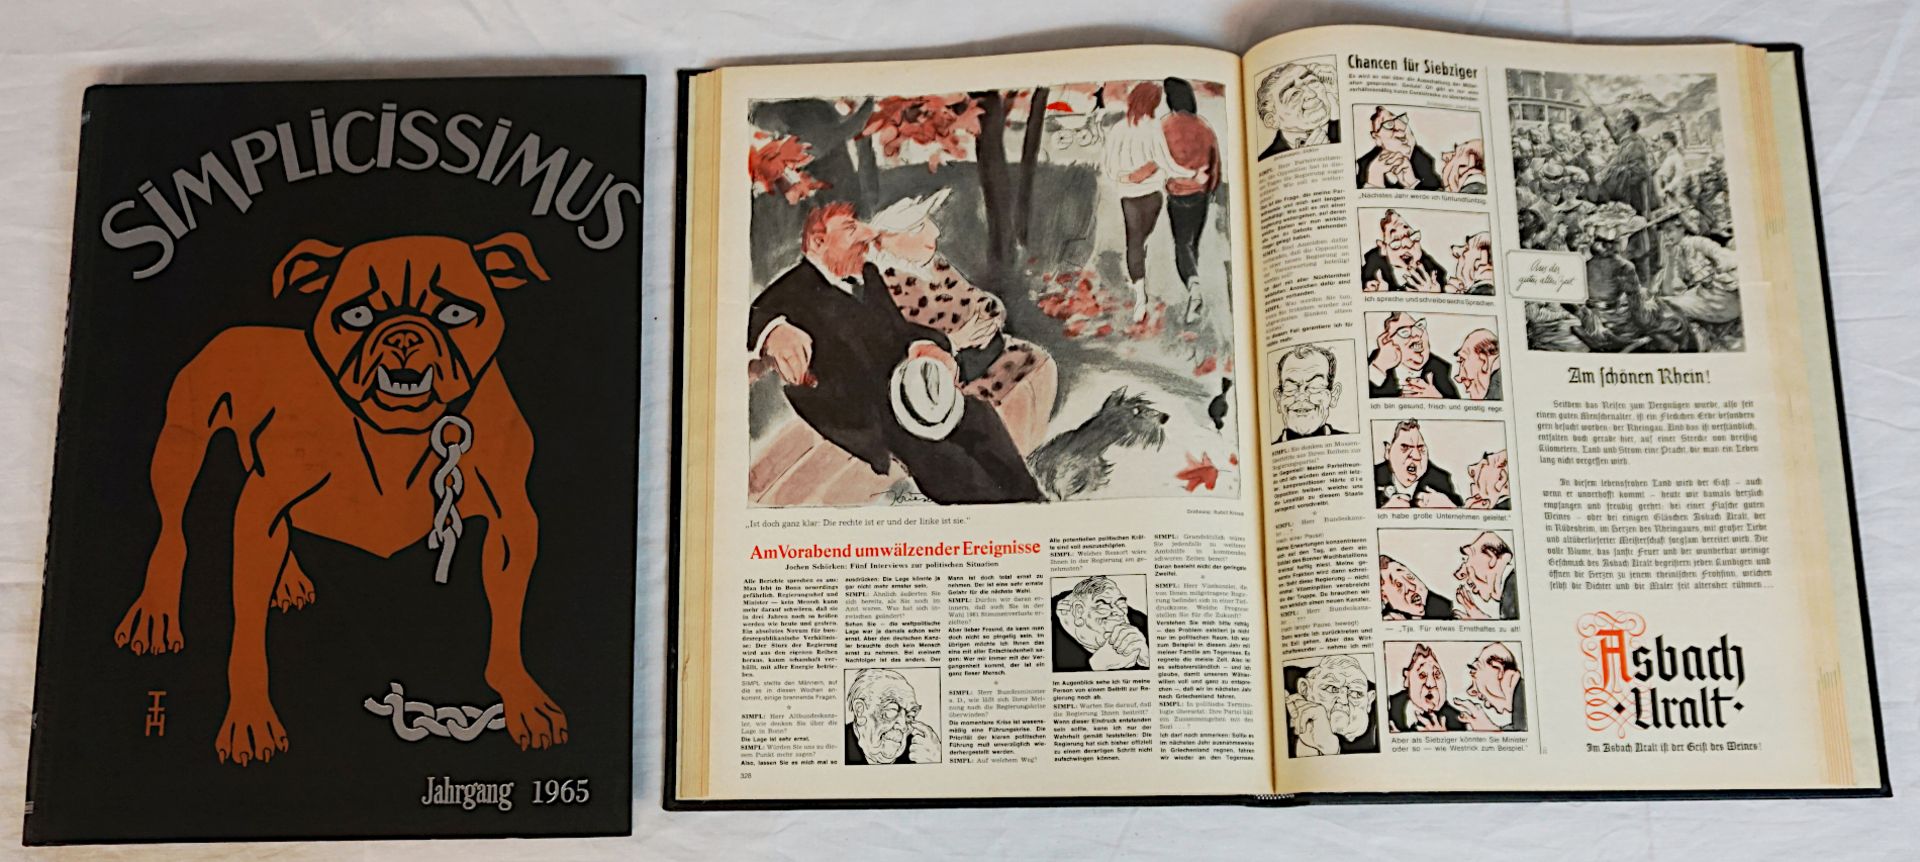 20 Sammelbände "Simplicissimus" Jahrgänge 1955-1966 (unkomplett): 19x mit farbillustrieten Originale